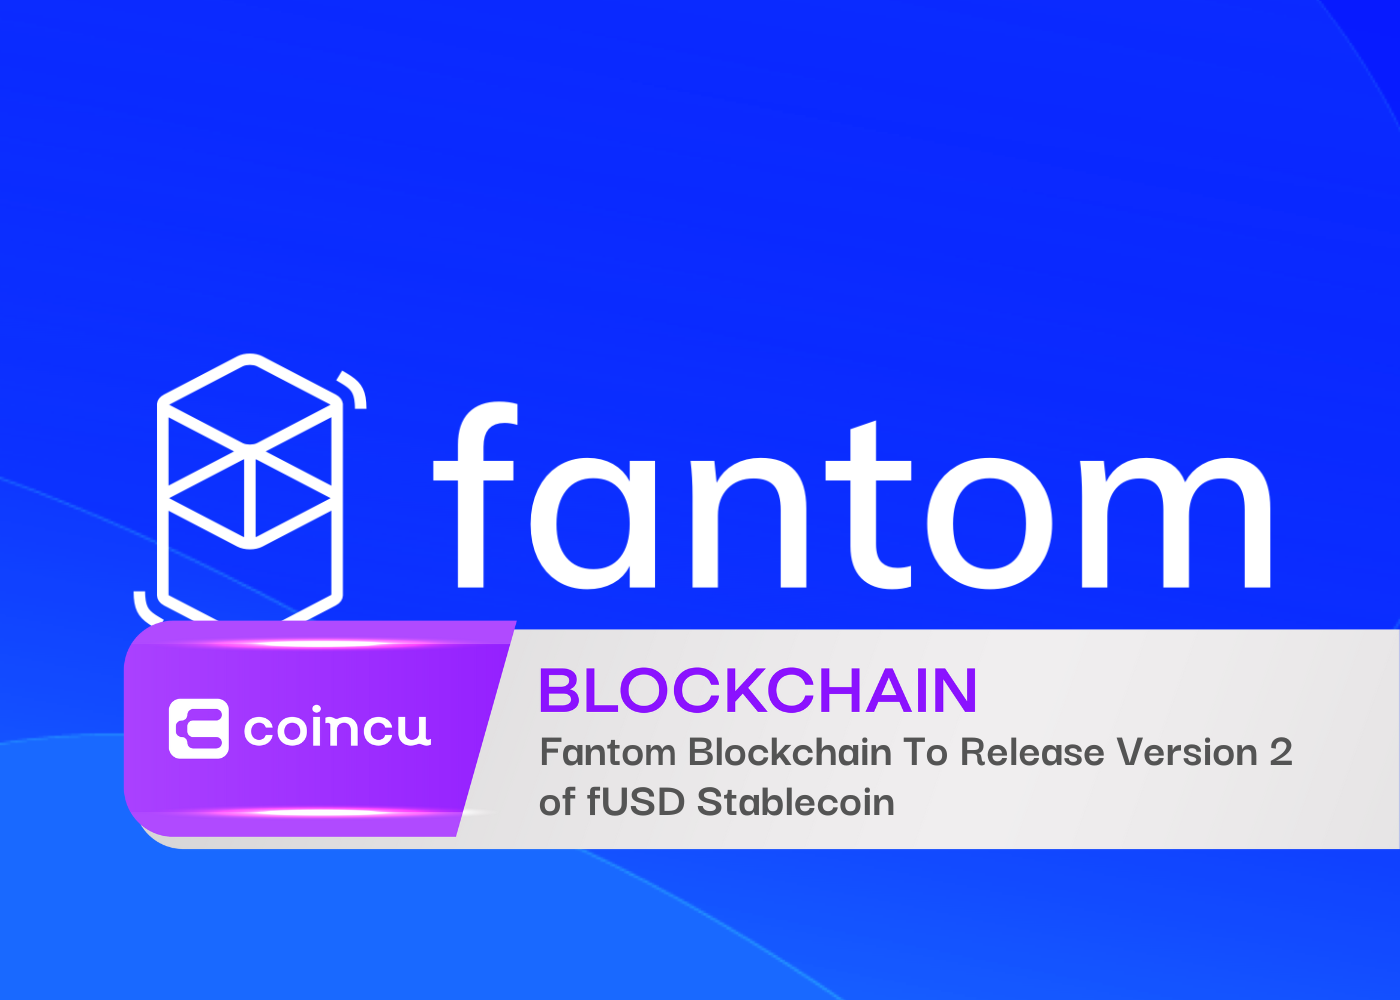 Fantom Blockchain veröffentlicht Version 2